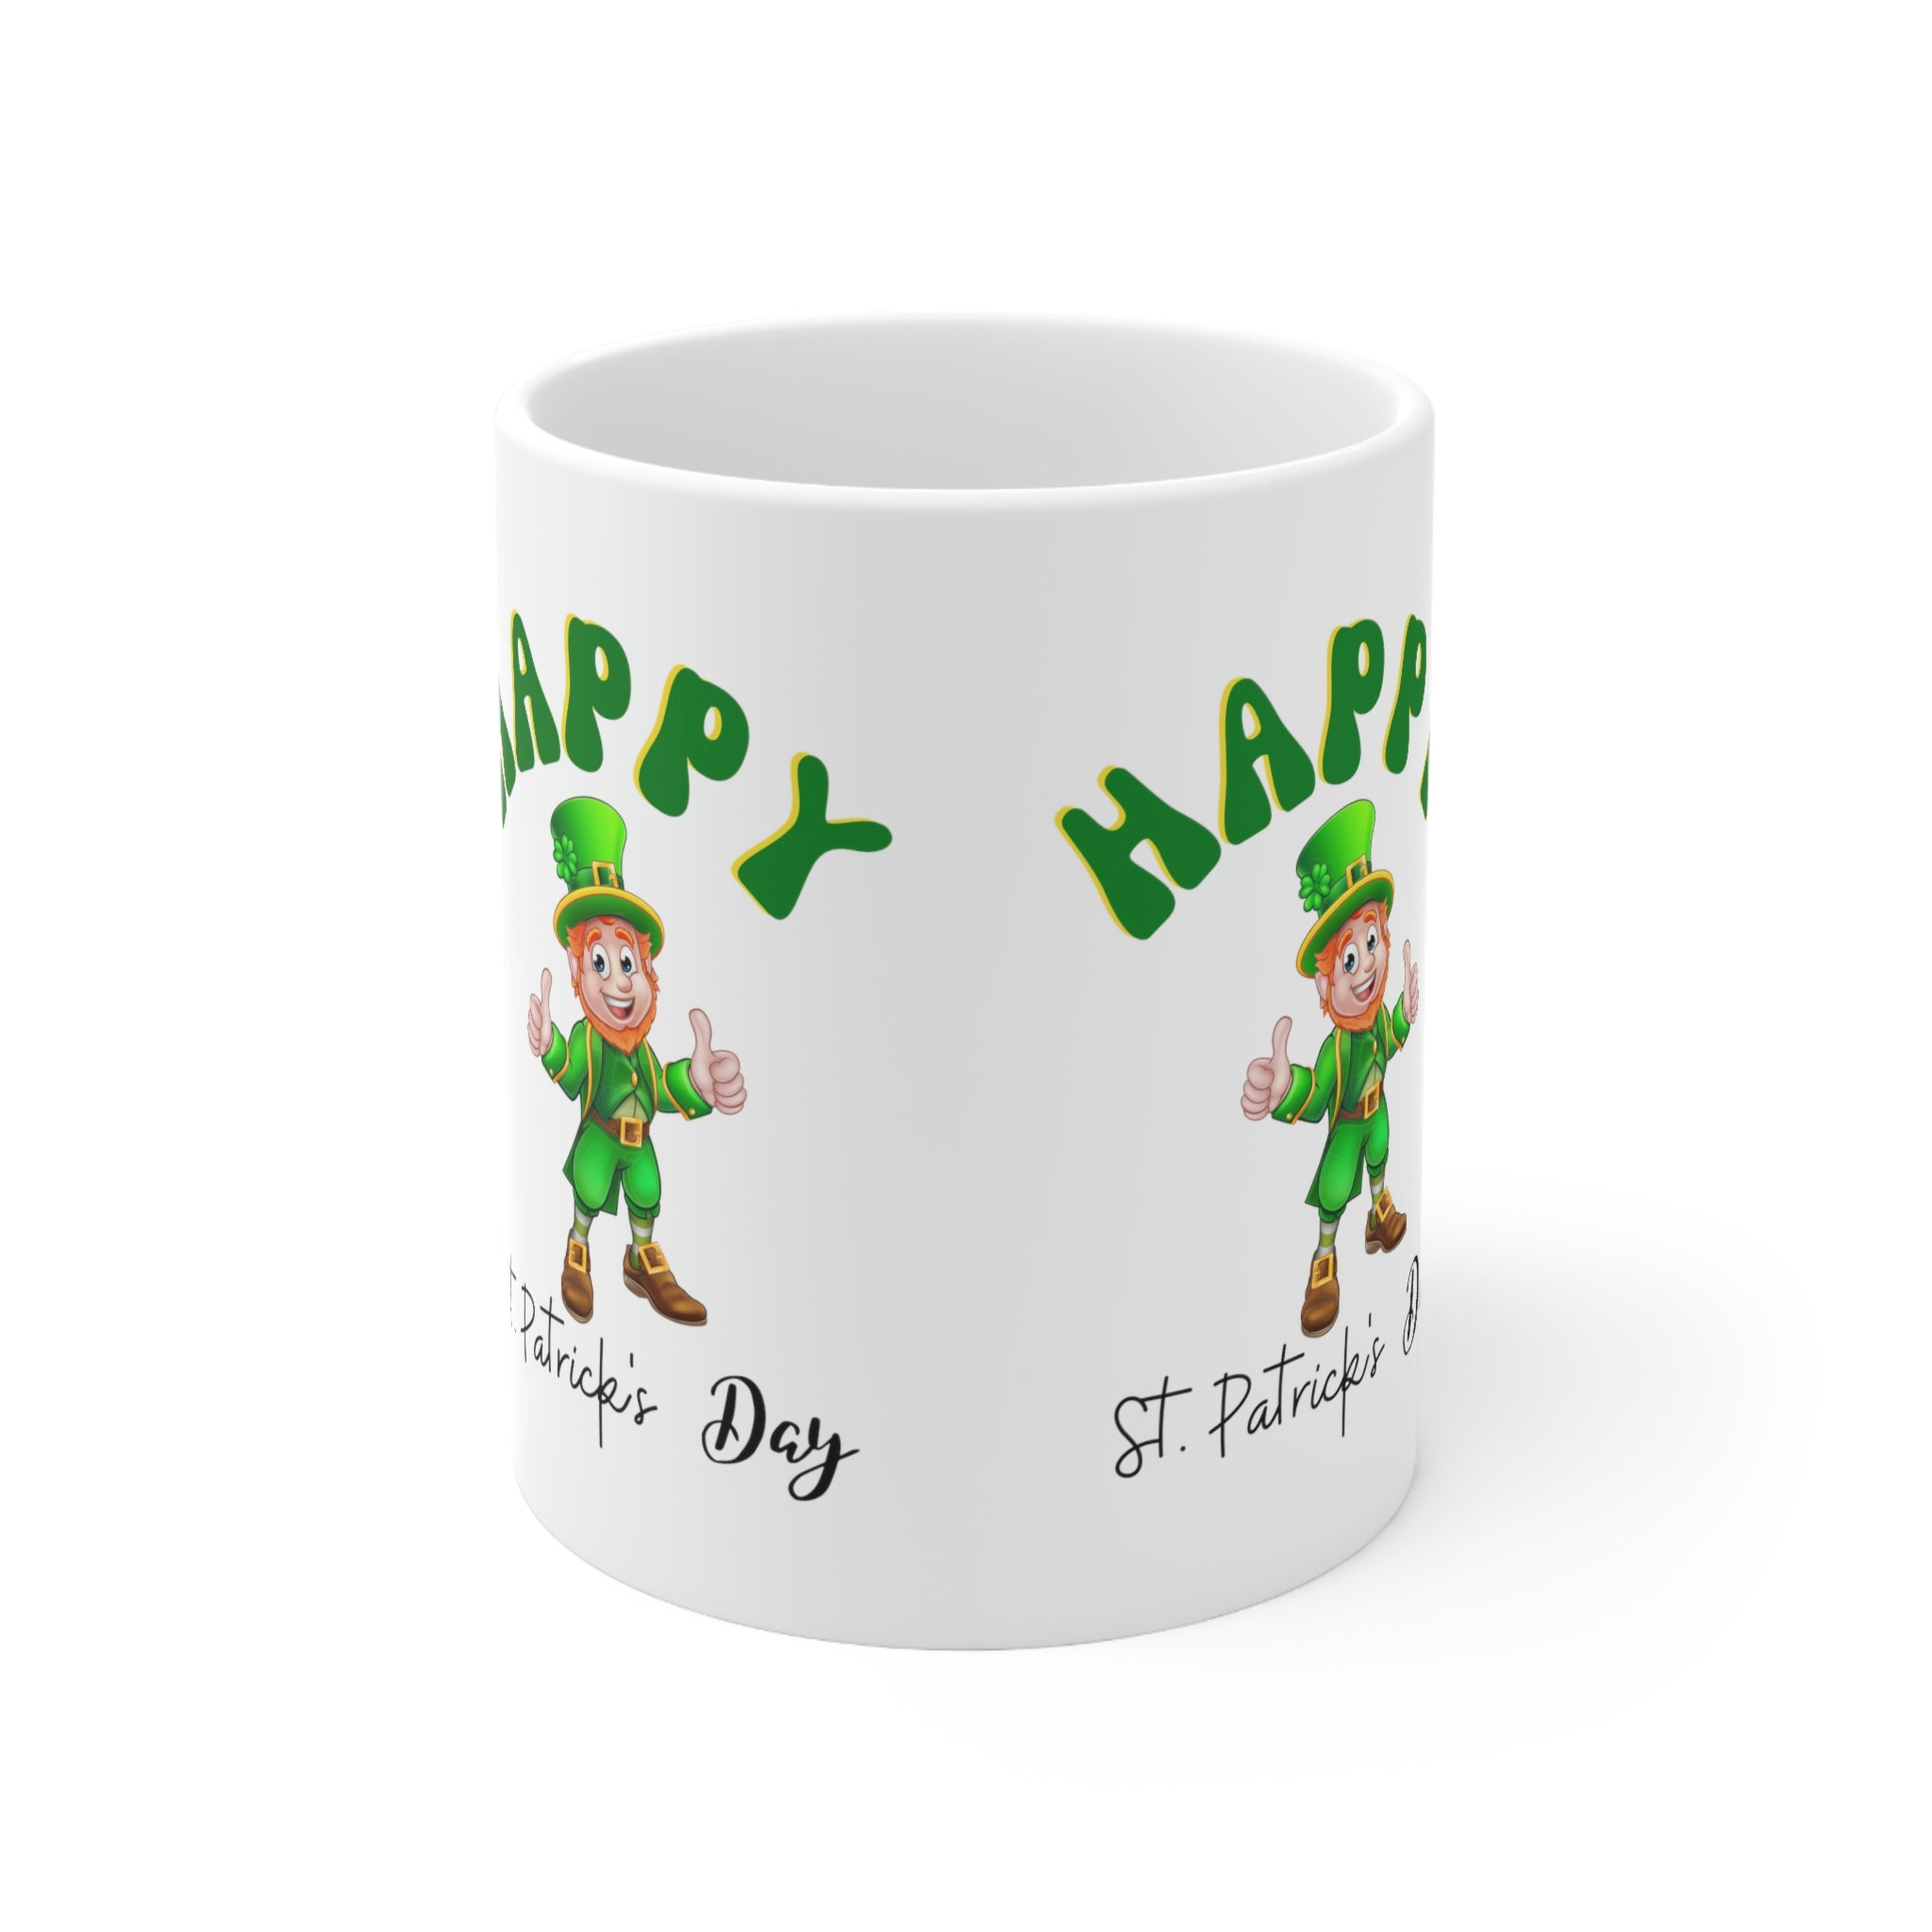 St. Patrick's Day Ceramic Mug 11oz